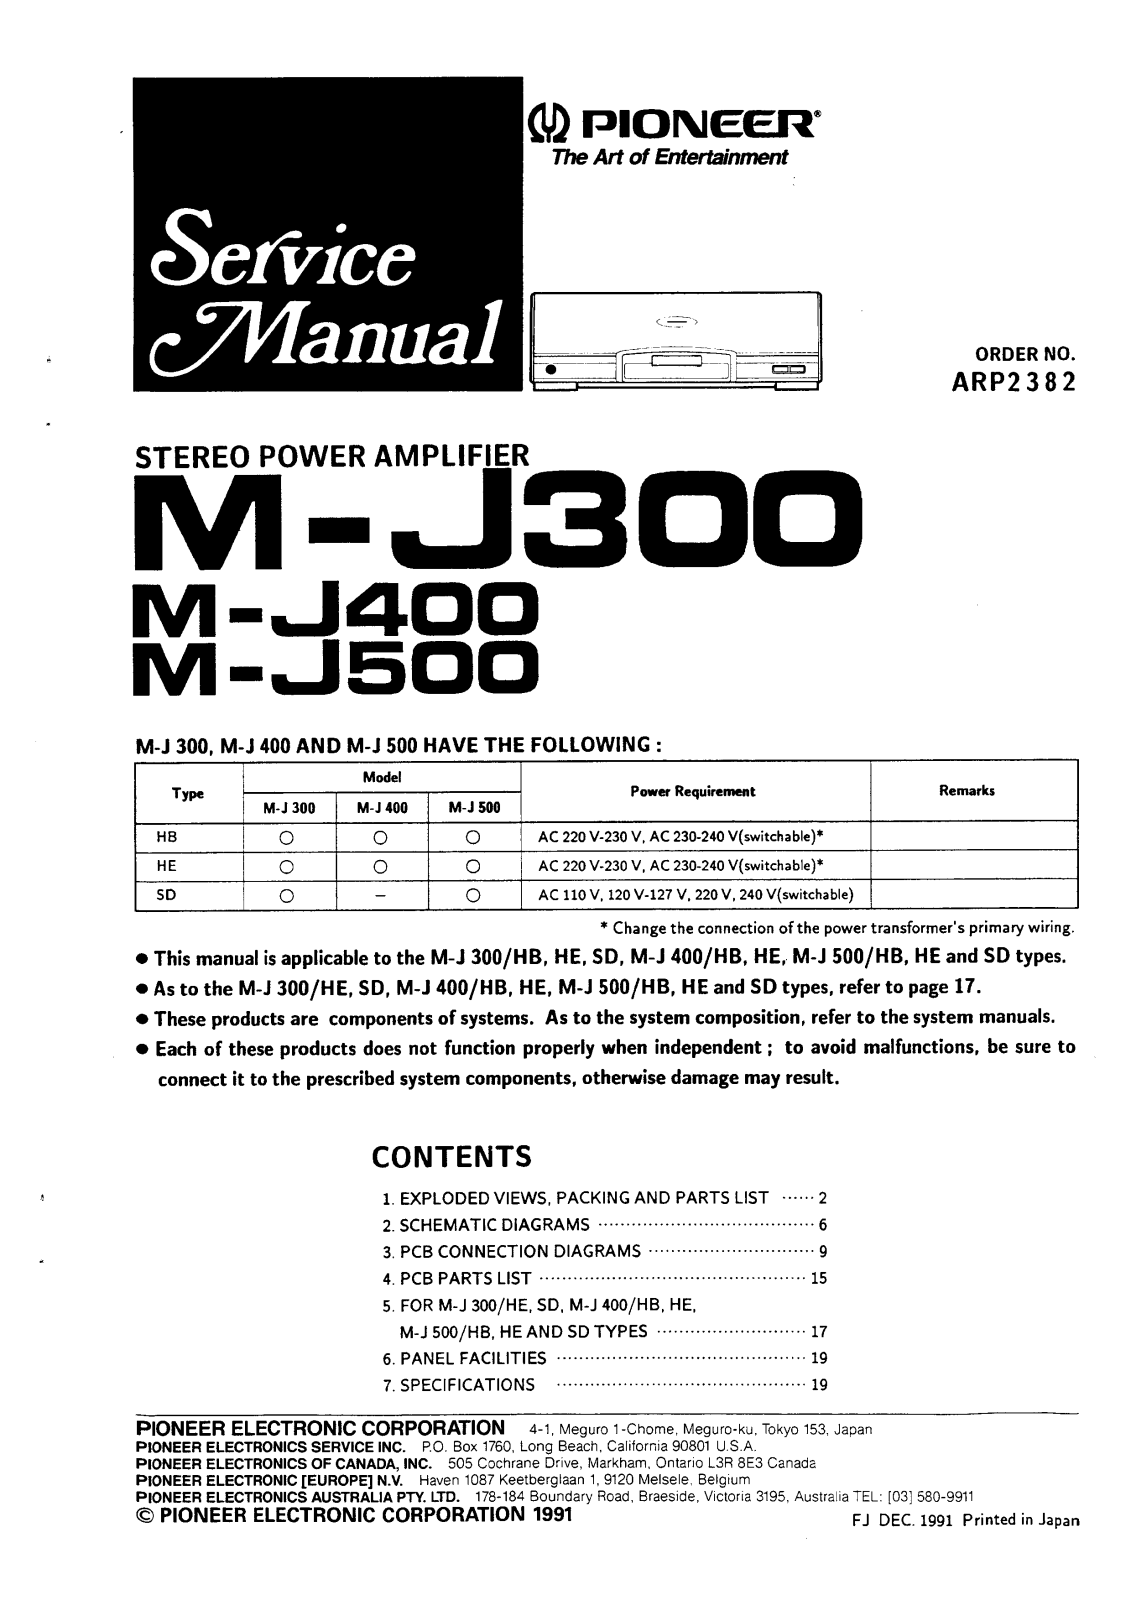 Pioneer MJ-300, MJ-400, MJ-500 Service manual